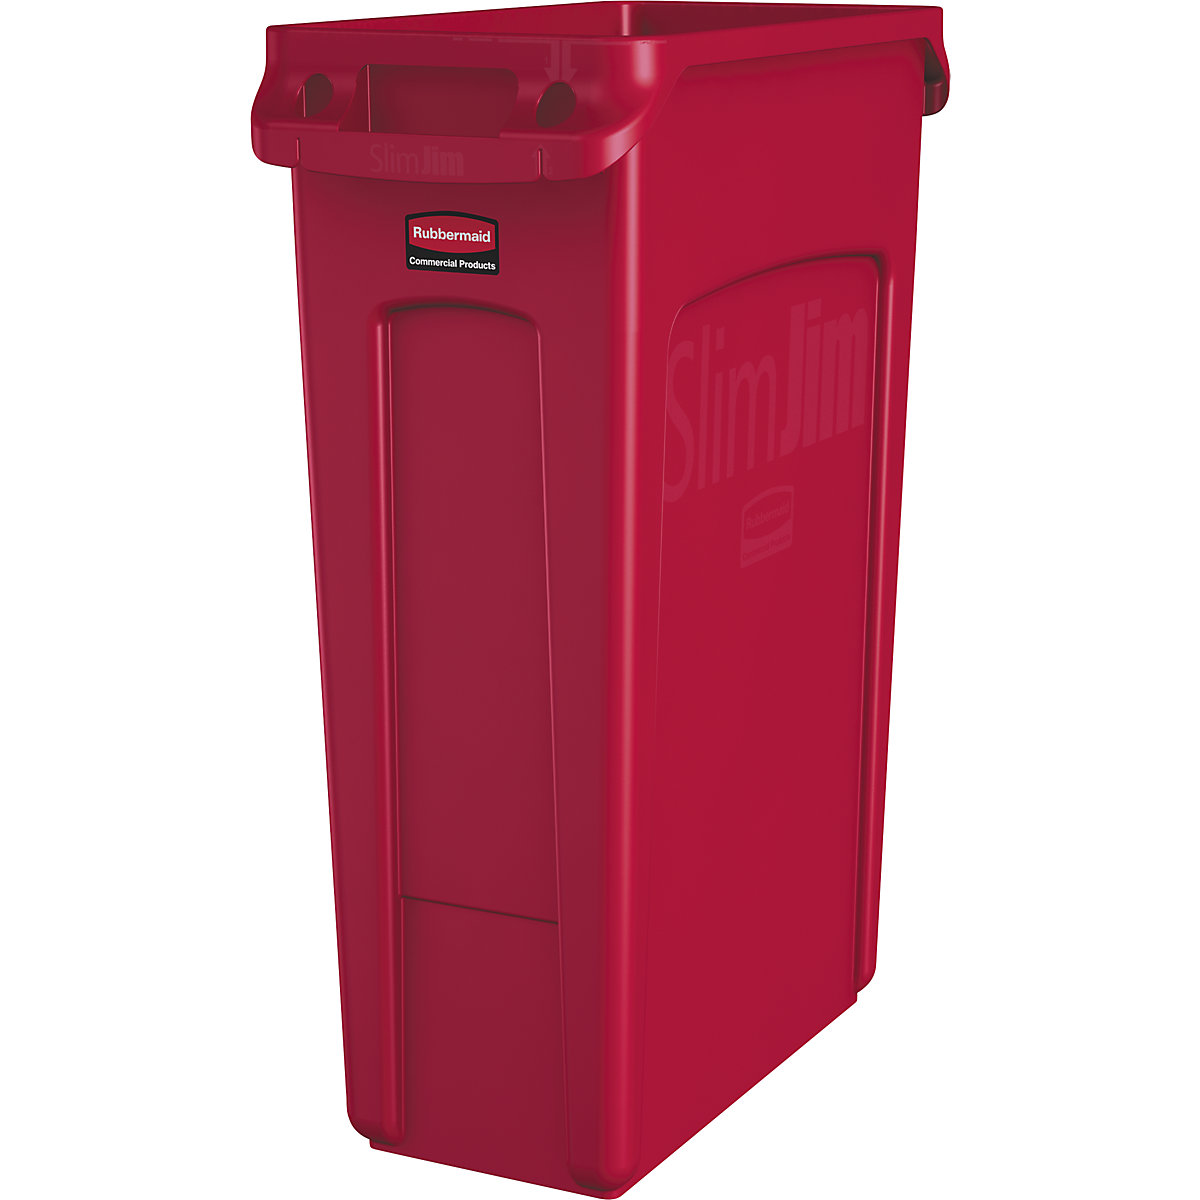 SLIM JIM® szelektív hulladékgyűjtő/szemetesvödör – Rubbermaid, űrtartalom 87 l, szellőzőcsatornákkal, piros-14